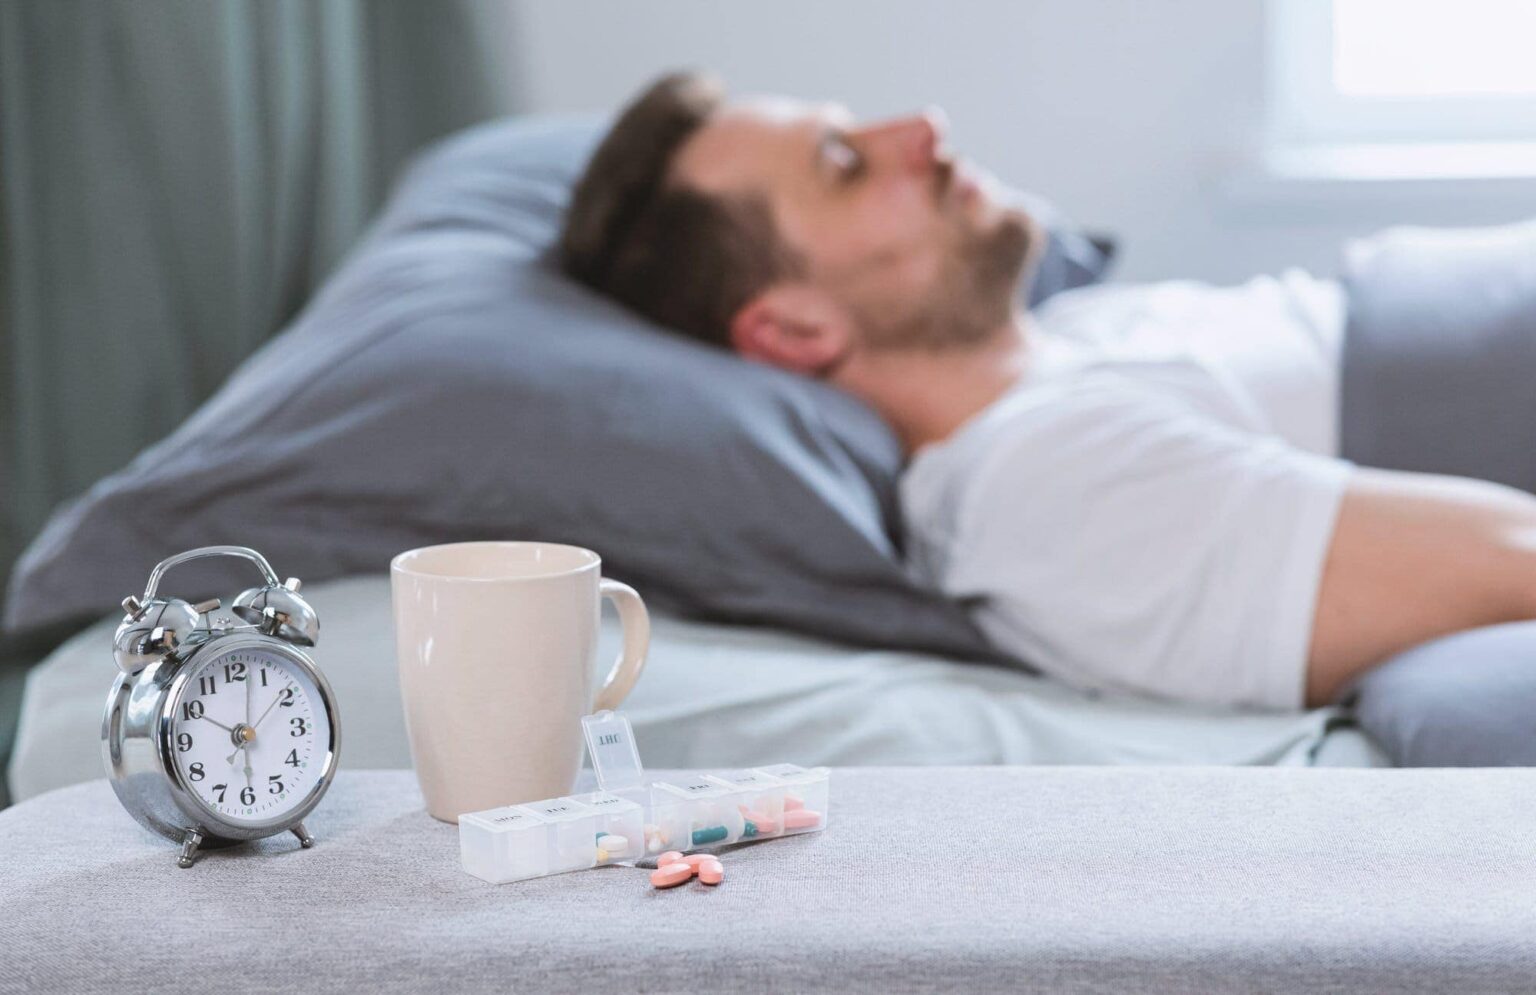 III Die 10 besten Schlafmittel (August 2021) Gesundheitszentrale